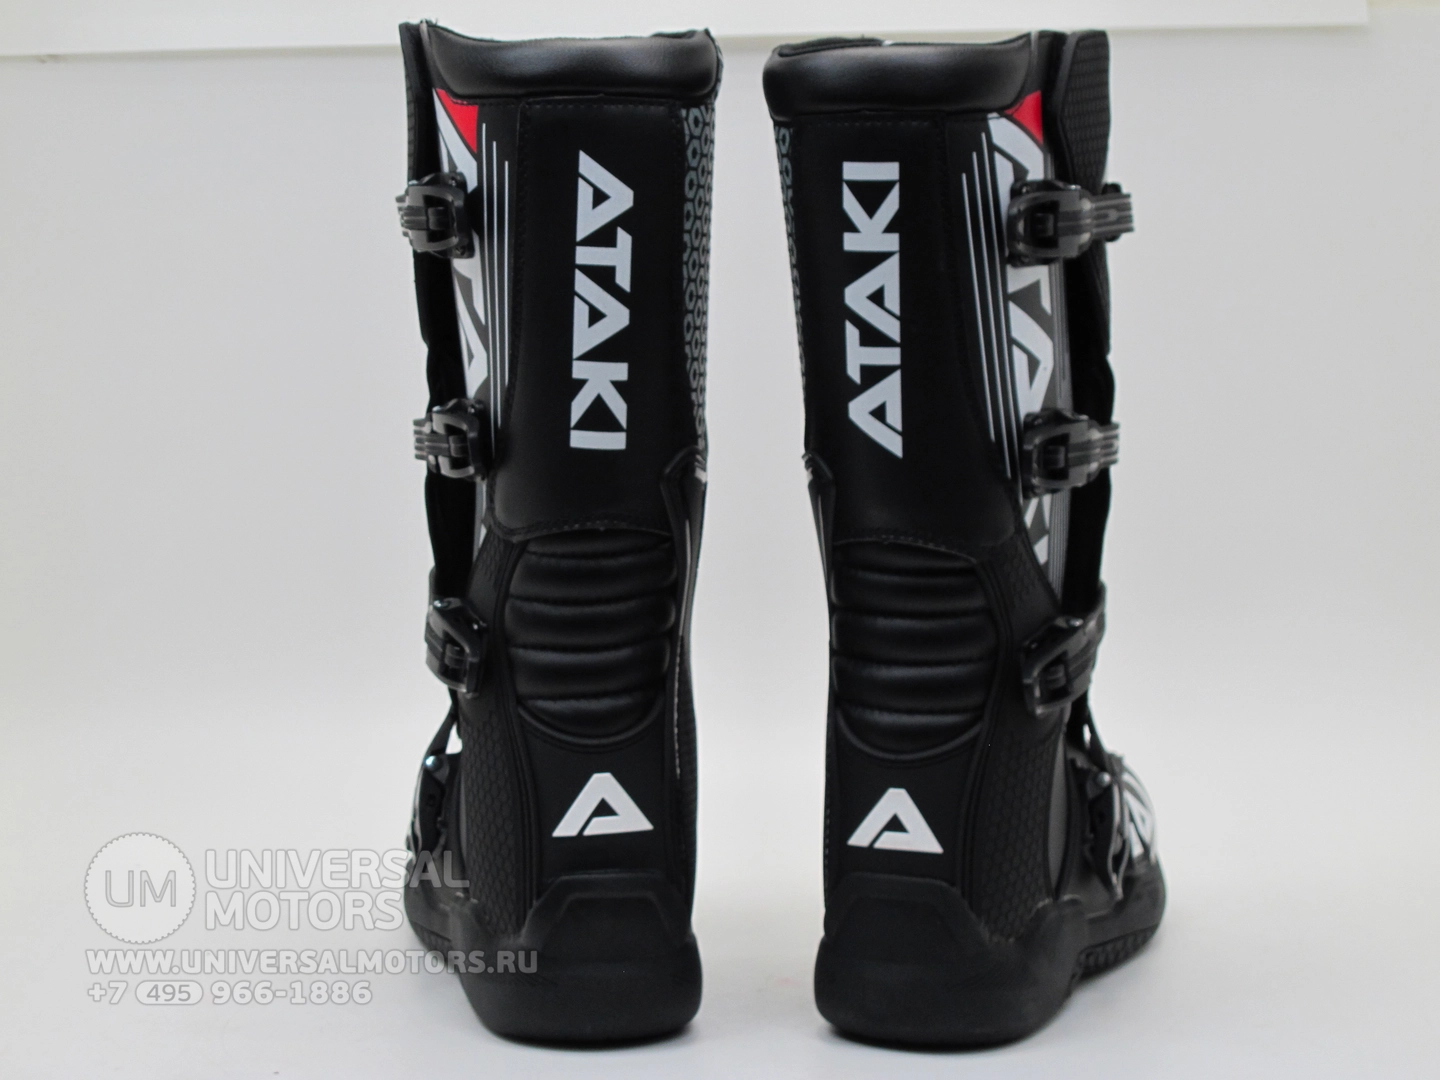 Мотоботы Ataki кроссовые MX-001 черные, Размер 45